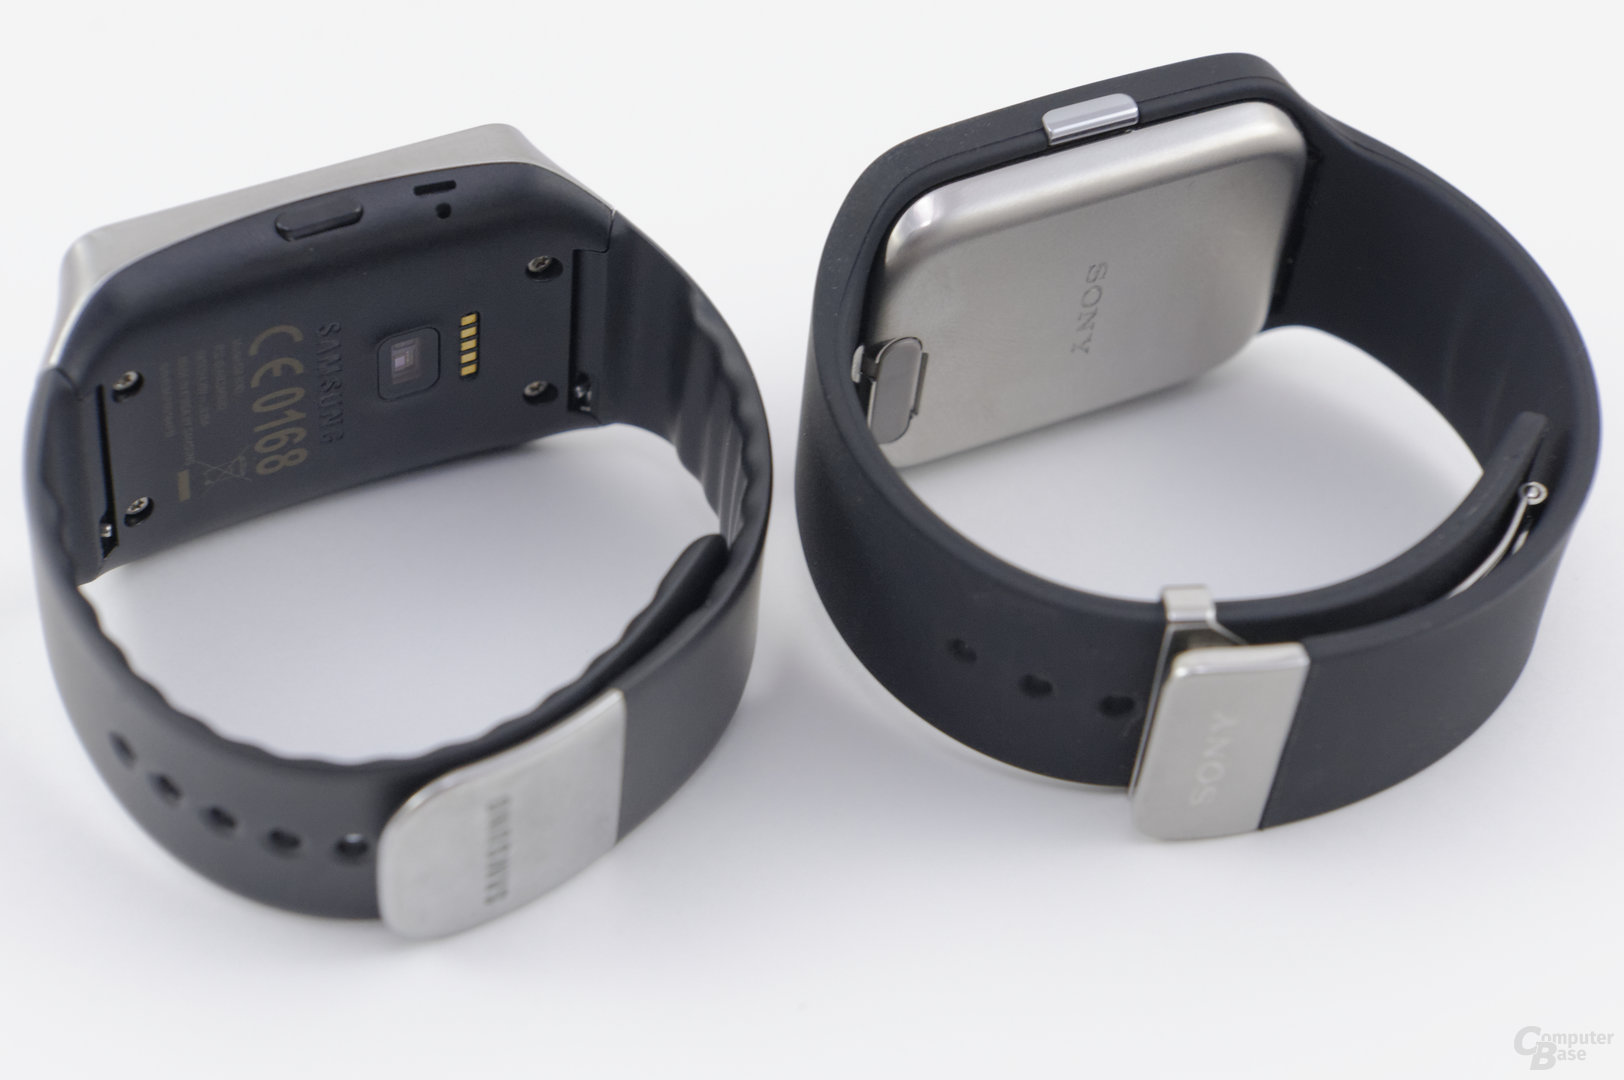 Samsung Gear Live und Sony Smartwatch 3 im Vergleich